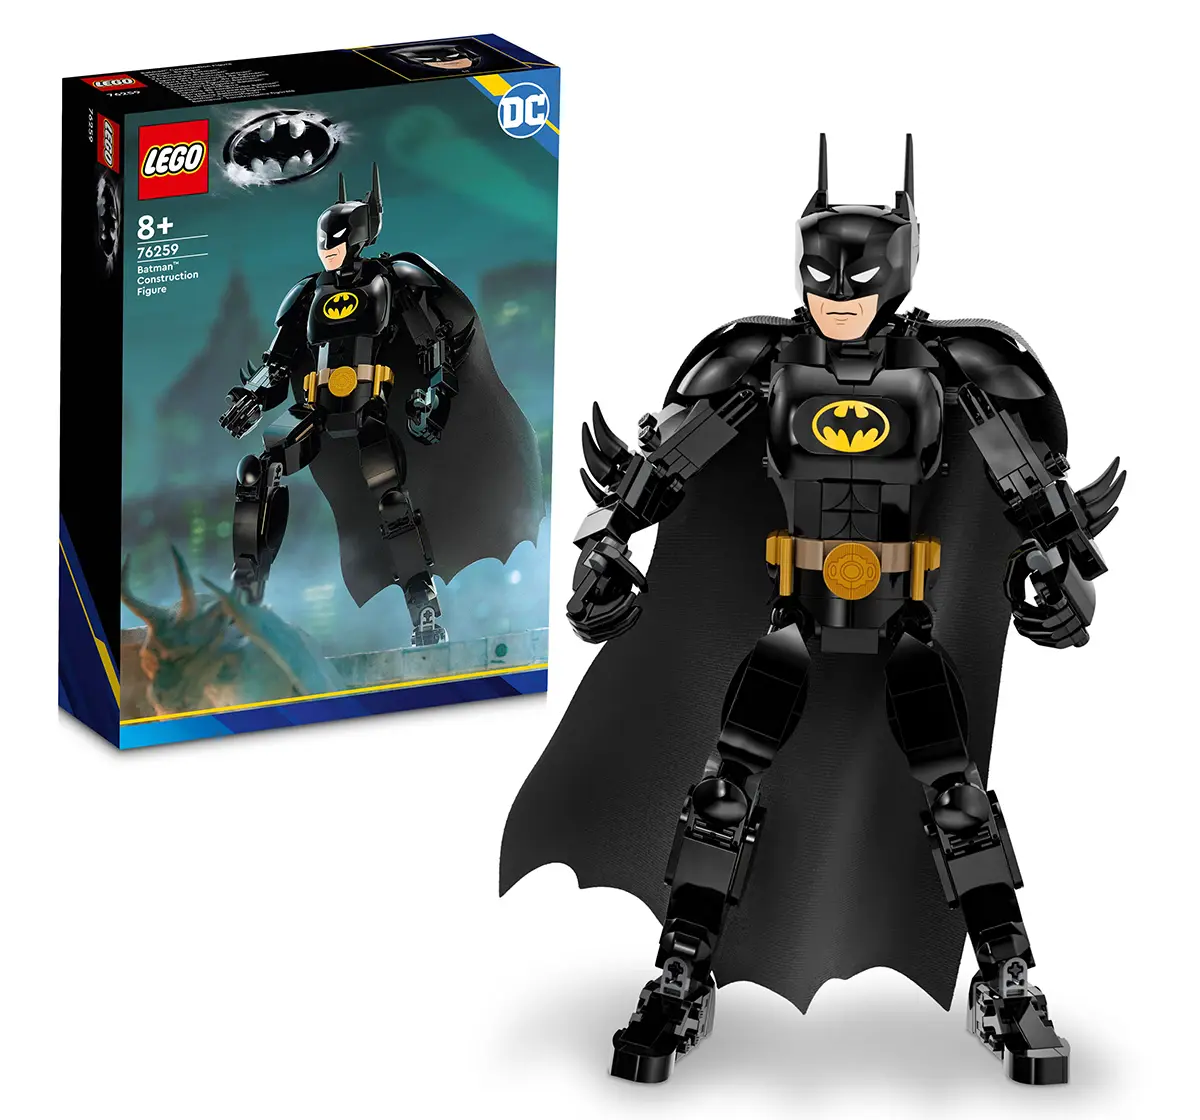 Lego Dc Batman Construction Figure 76259 Building Toy Set (275 Pieces), 8Y+